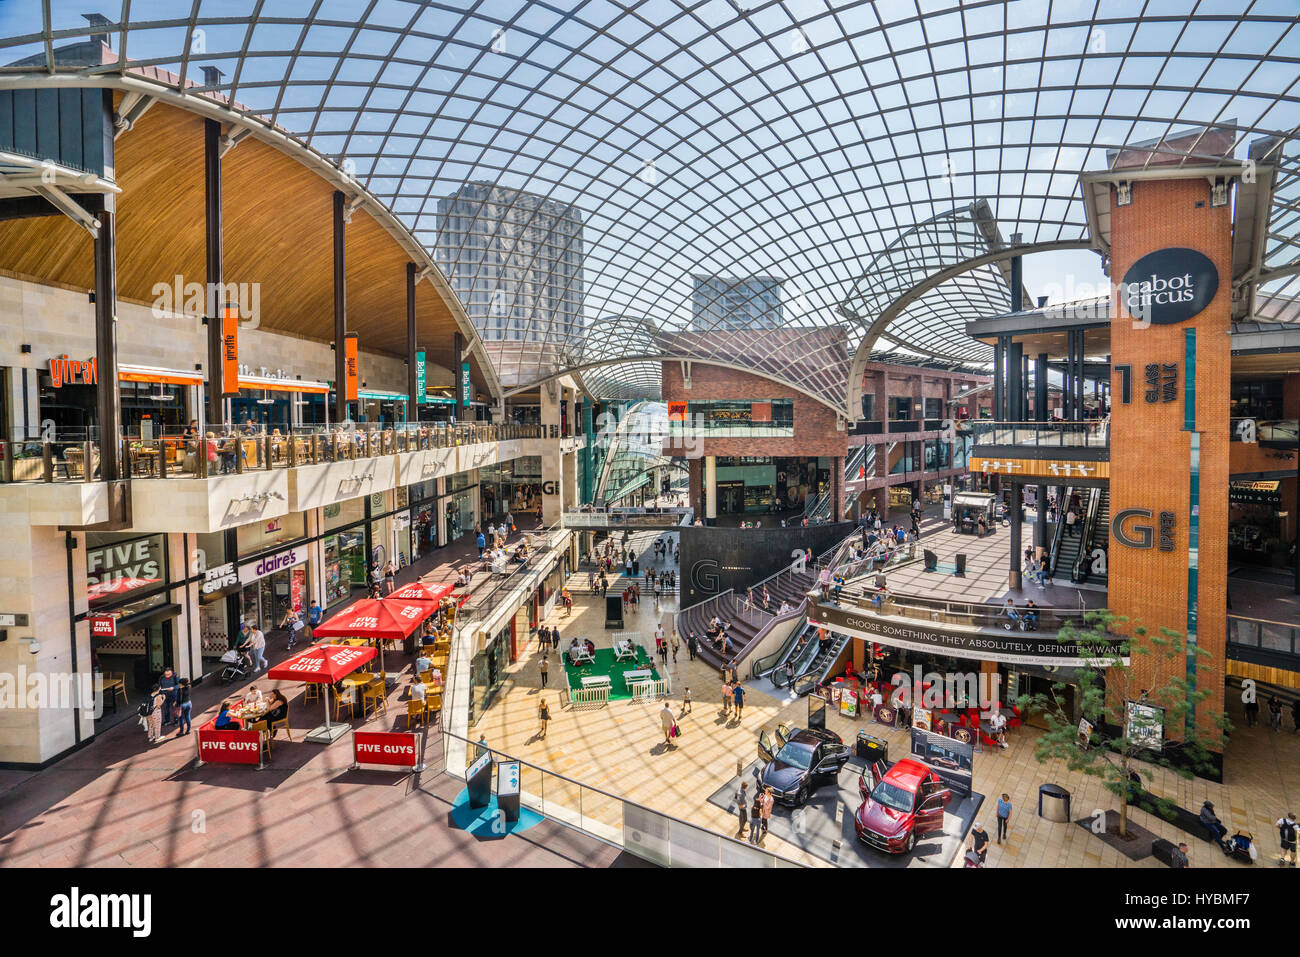 Vereinigtes Königreich, South West England, Bristol, Cabot Circus Shopping Centre mit enormen Glas verkleideten Dach Stockfoto